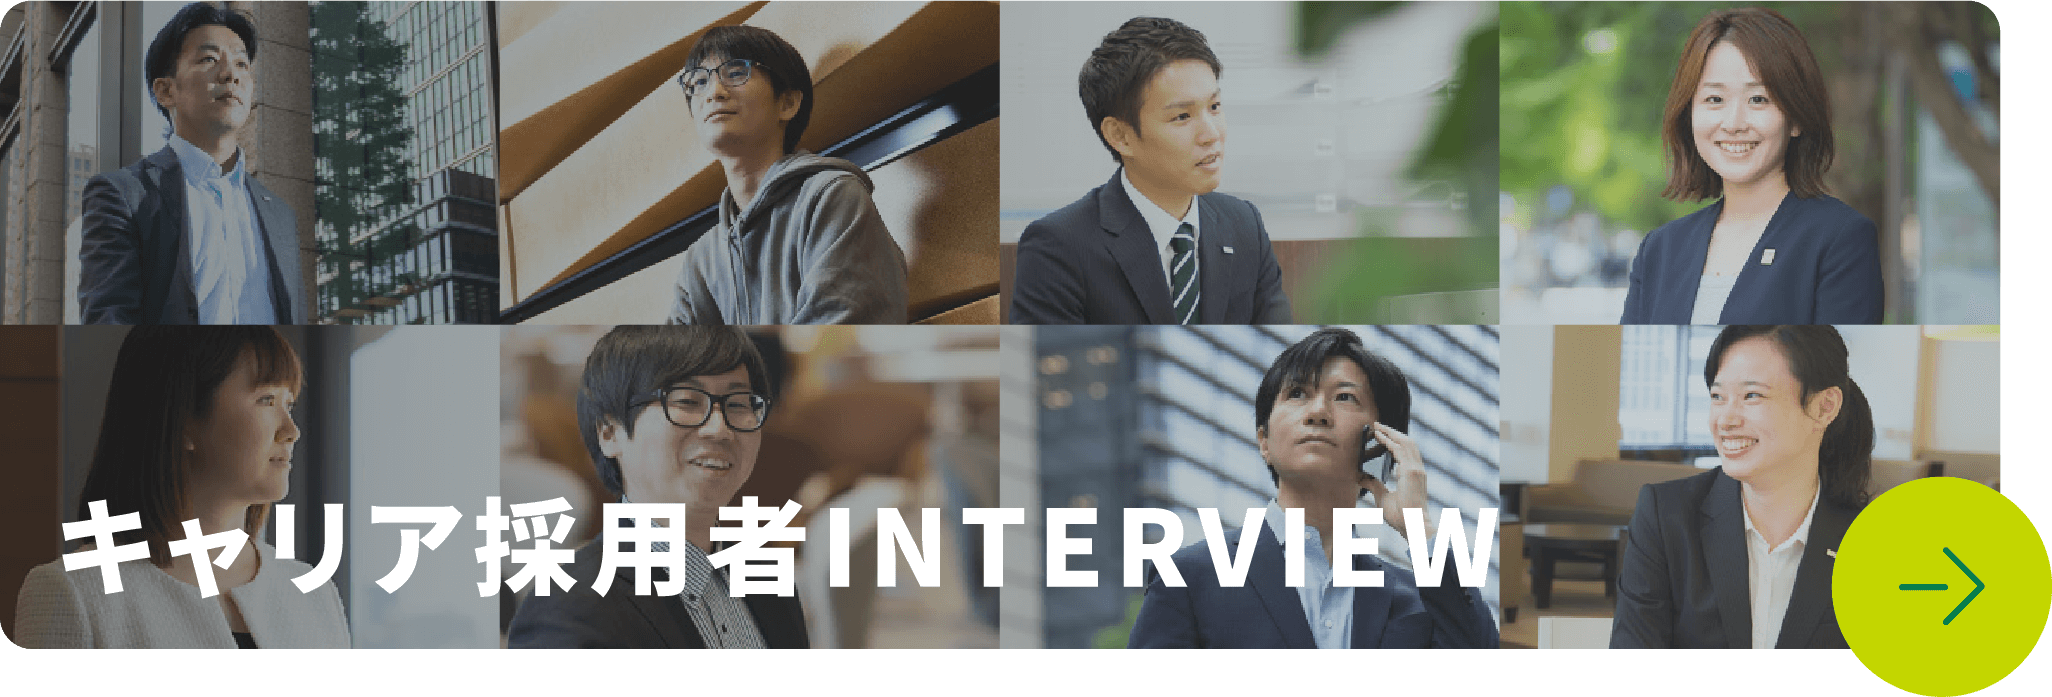 キャリア採用者INTERVIEW